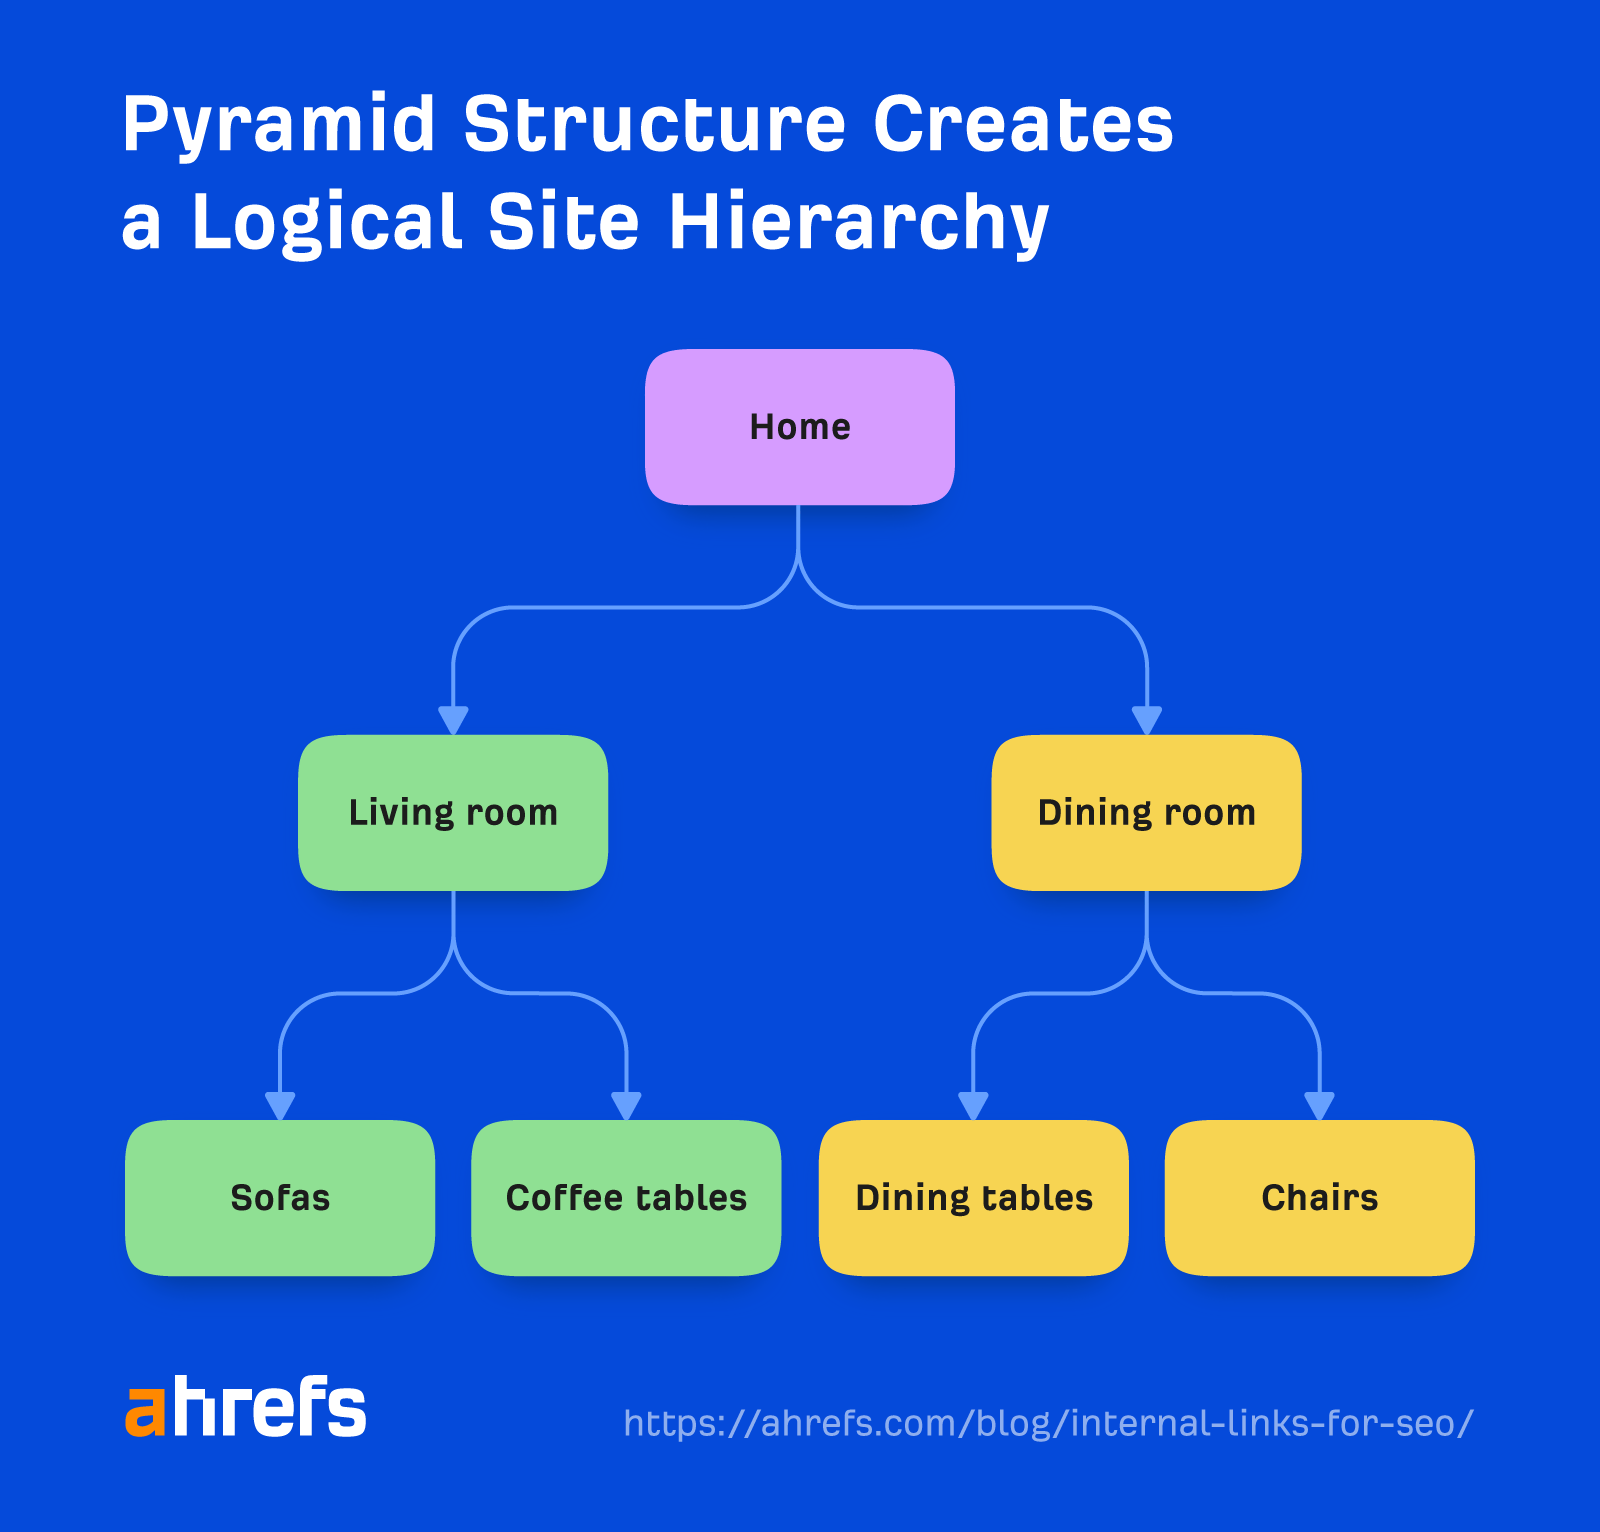 Bir piramit yapısının nasıl mantıksal bir site hiyerarşisi oluşturduğunu gösteren akış şeması